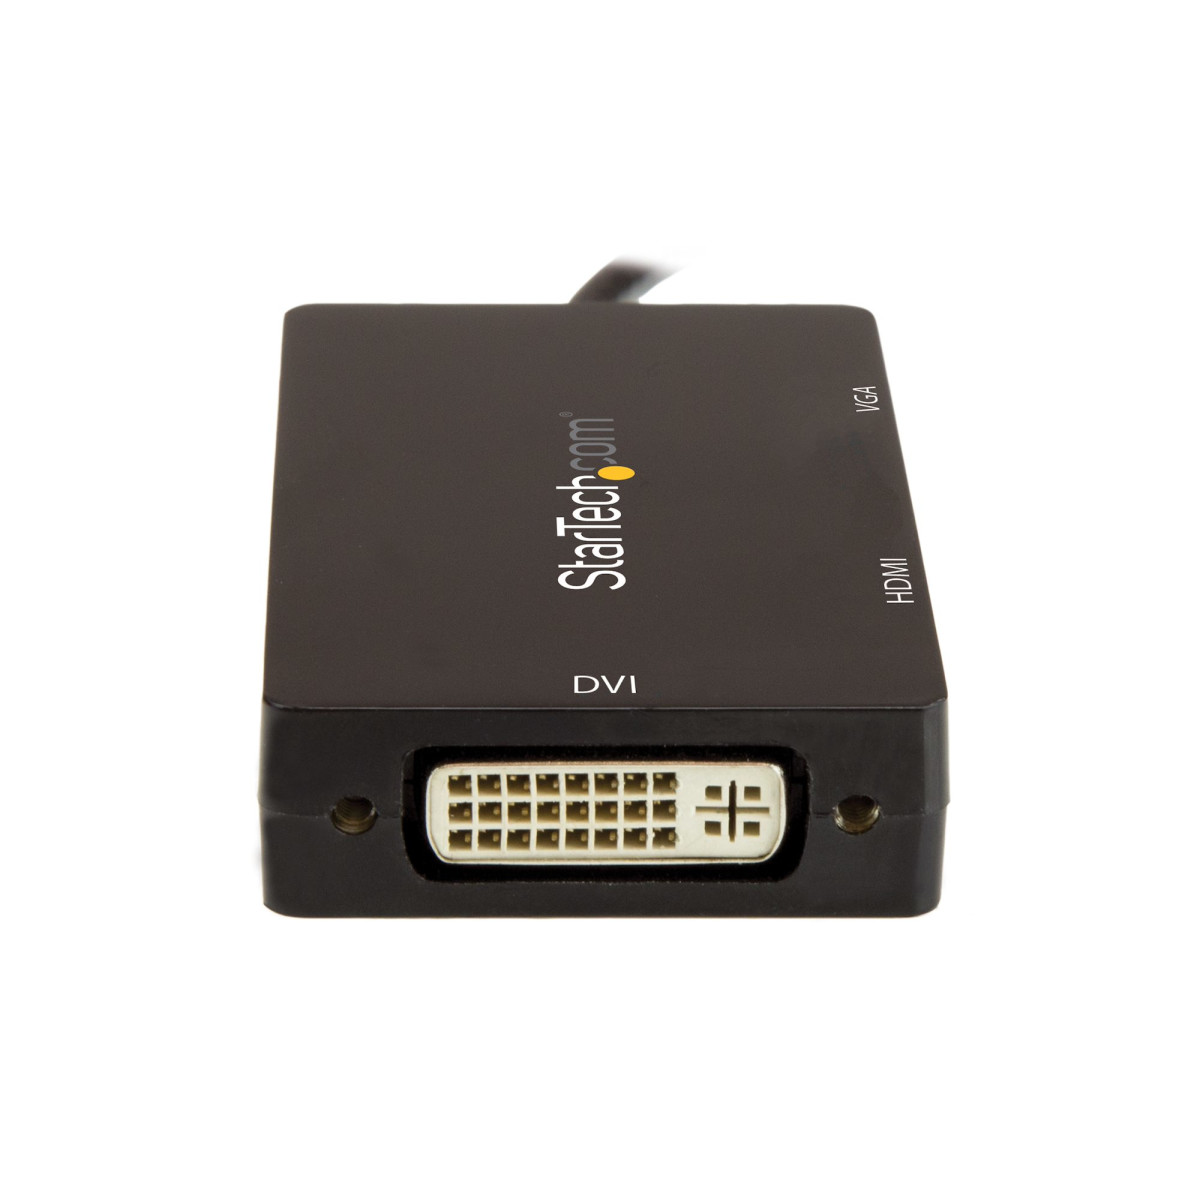 3-in-1 USB-C to VGA DVI or HDMI